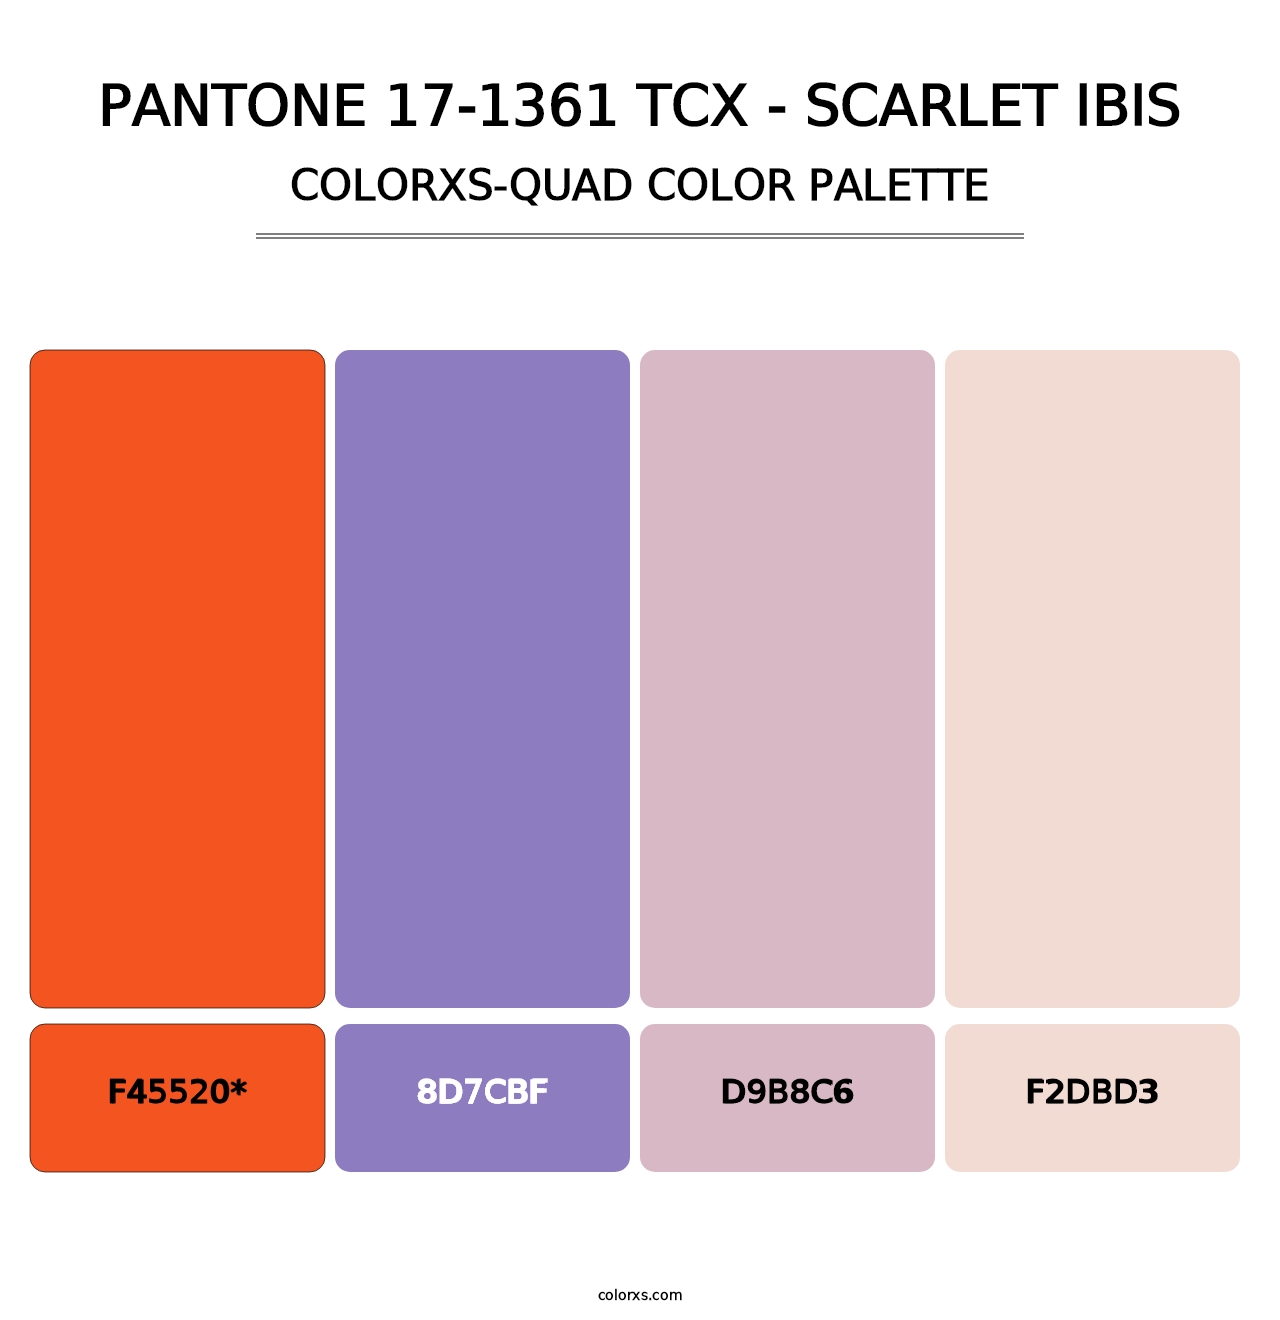 PANTONE 17-1361 TCX - Scarlet Ibis - Colorxs Quad Palette